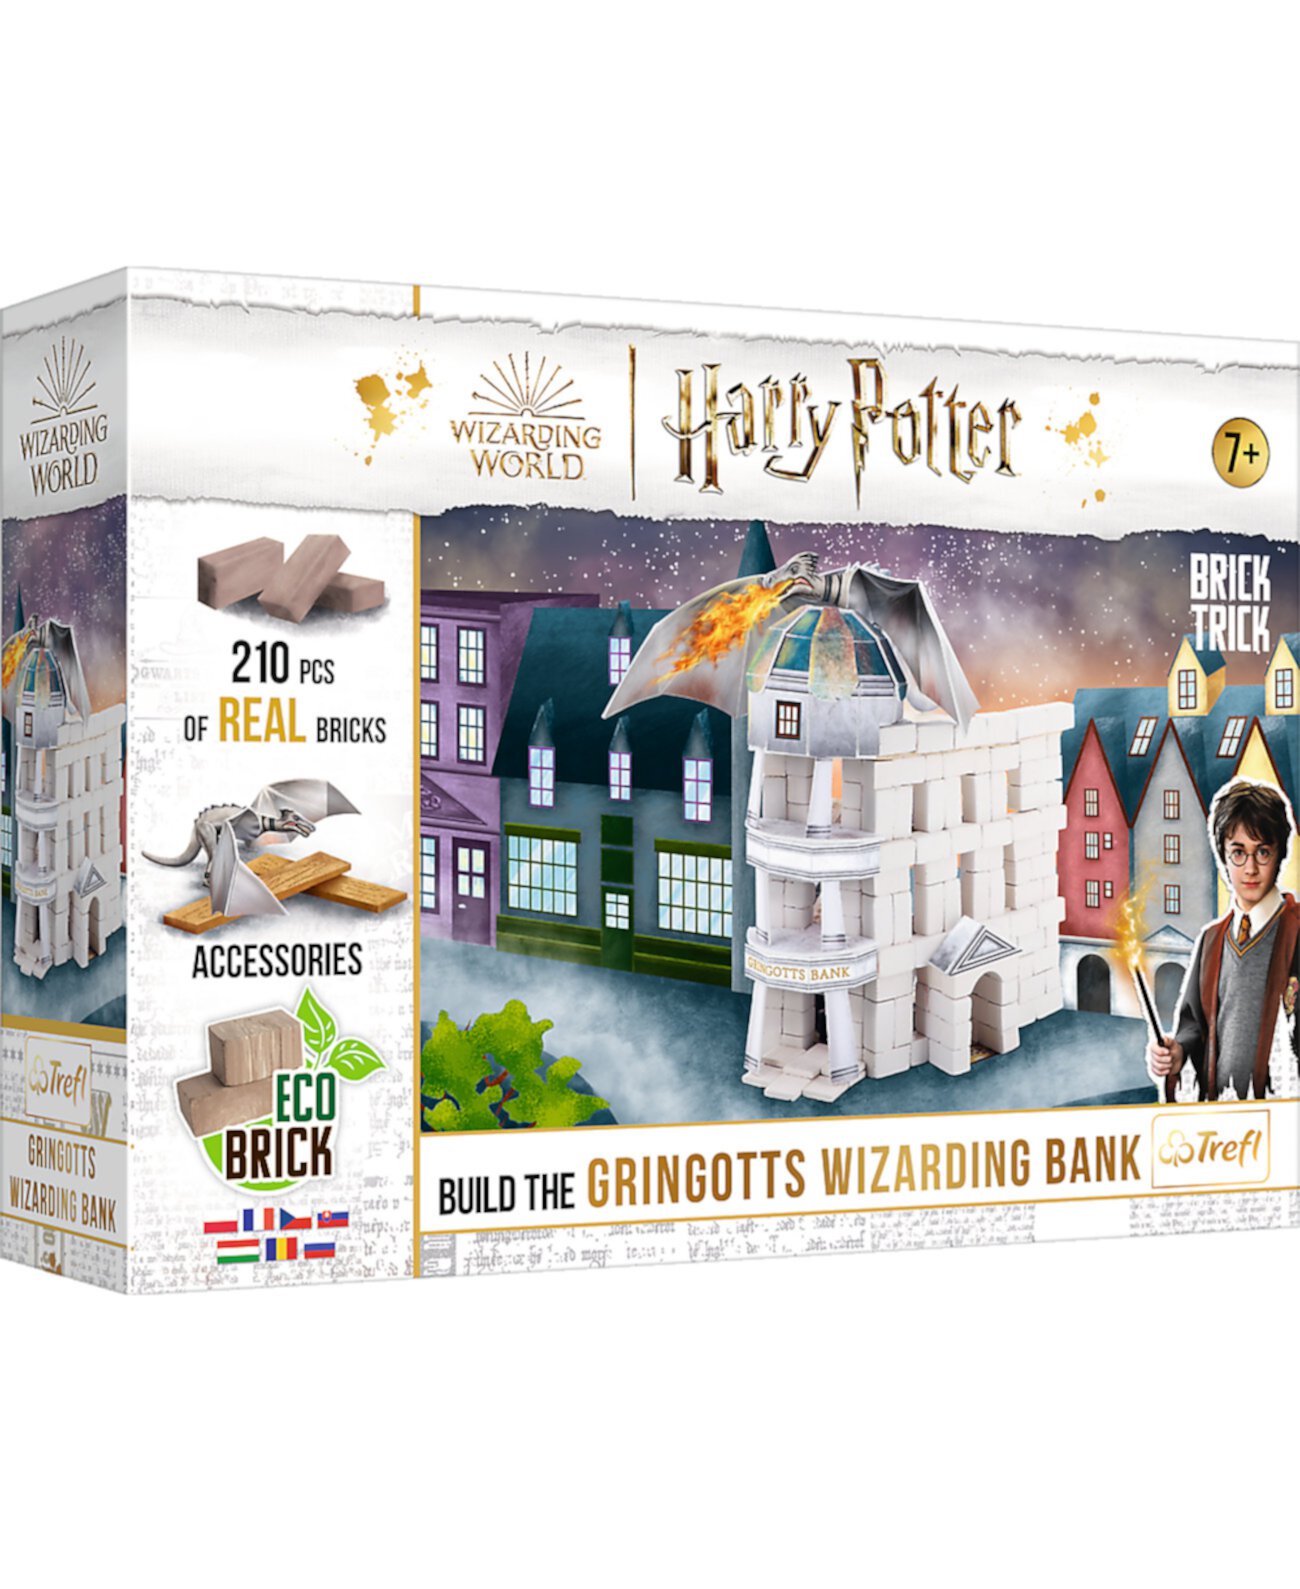 Harry Potter Brick Tricks Волшебный банк Гринготтс, 210 предметов Trefl